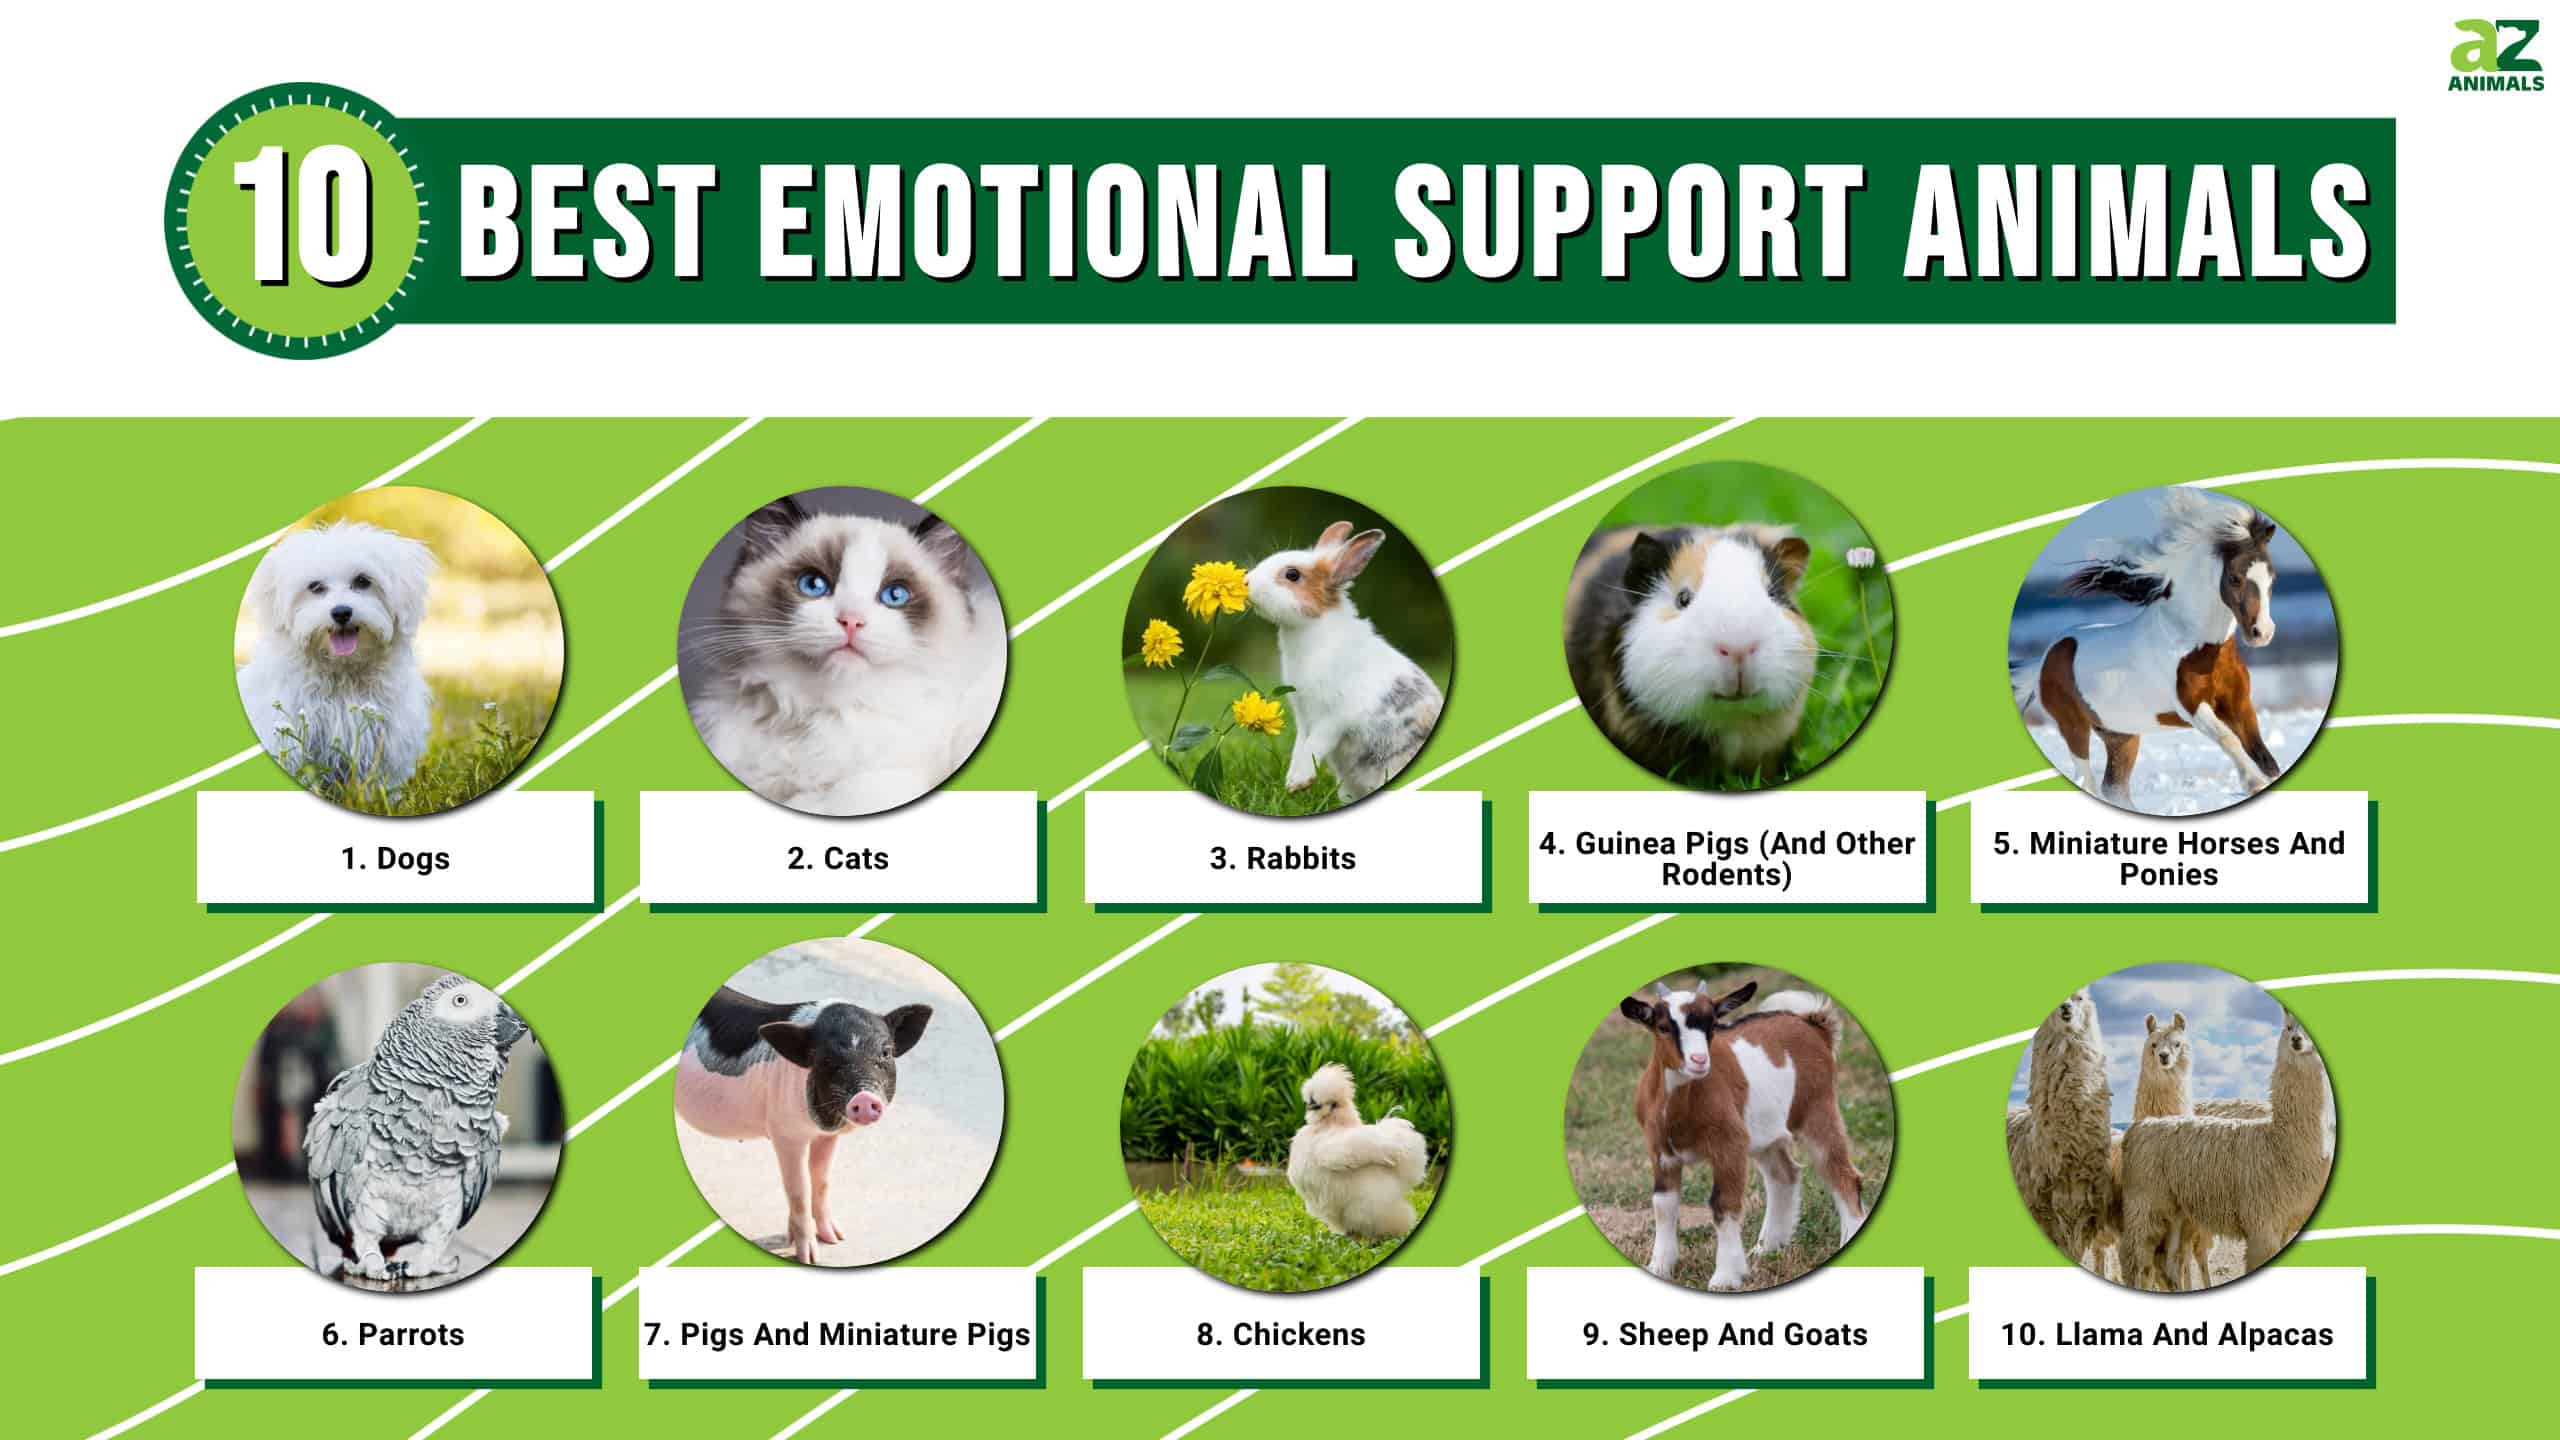 The 10 Best Emotional Support Animals - AZ Animals